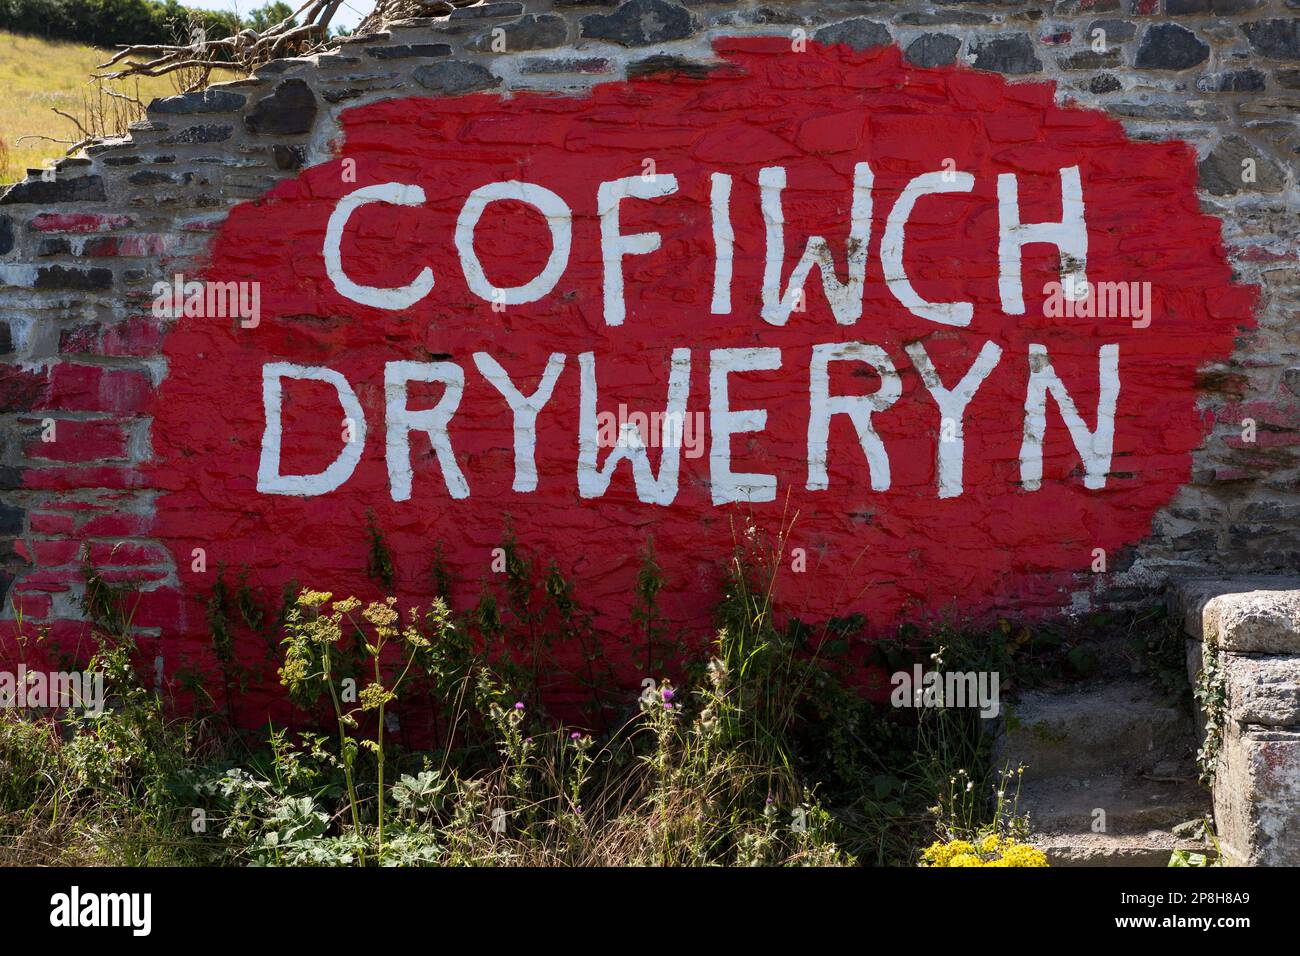 Cofiwch Dryweryn grafitti on wall near Llanrhystud, Ceredigion, Wales Stock Photo